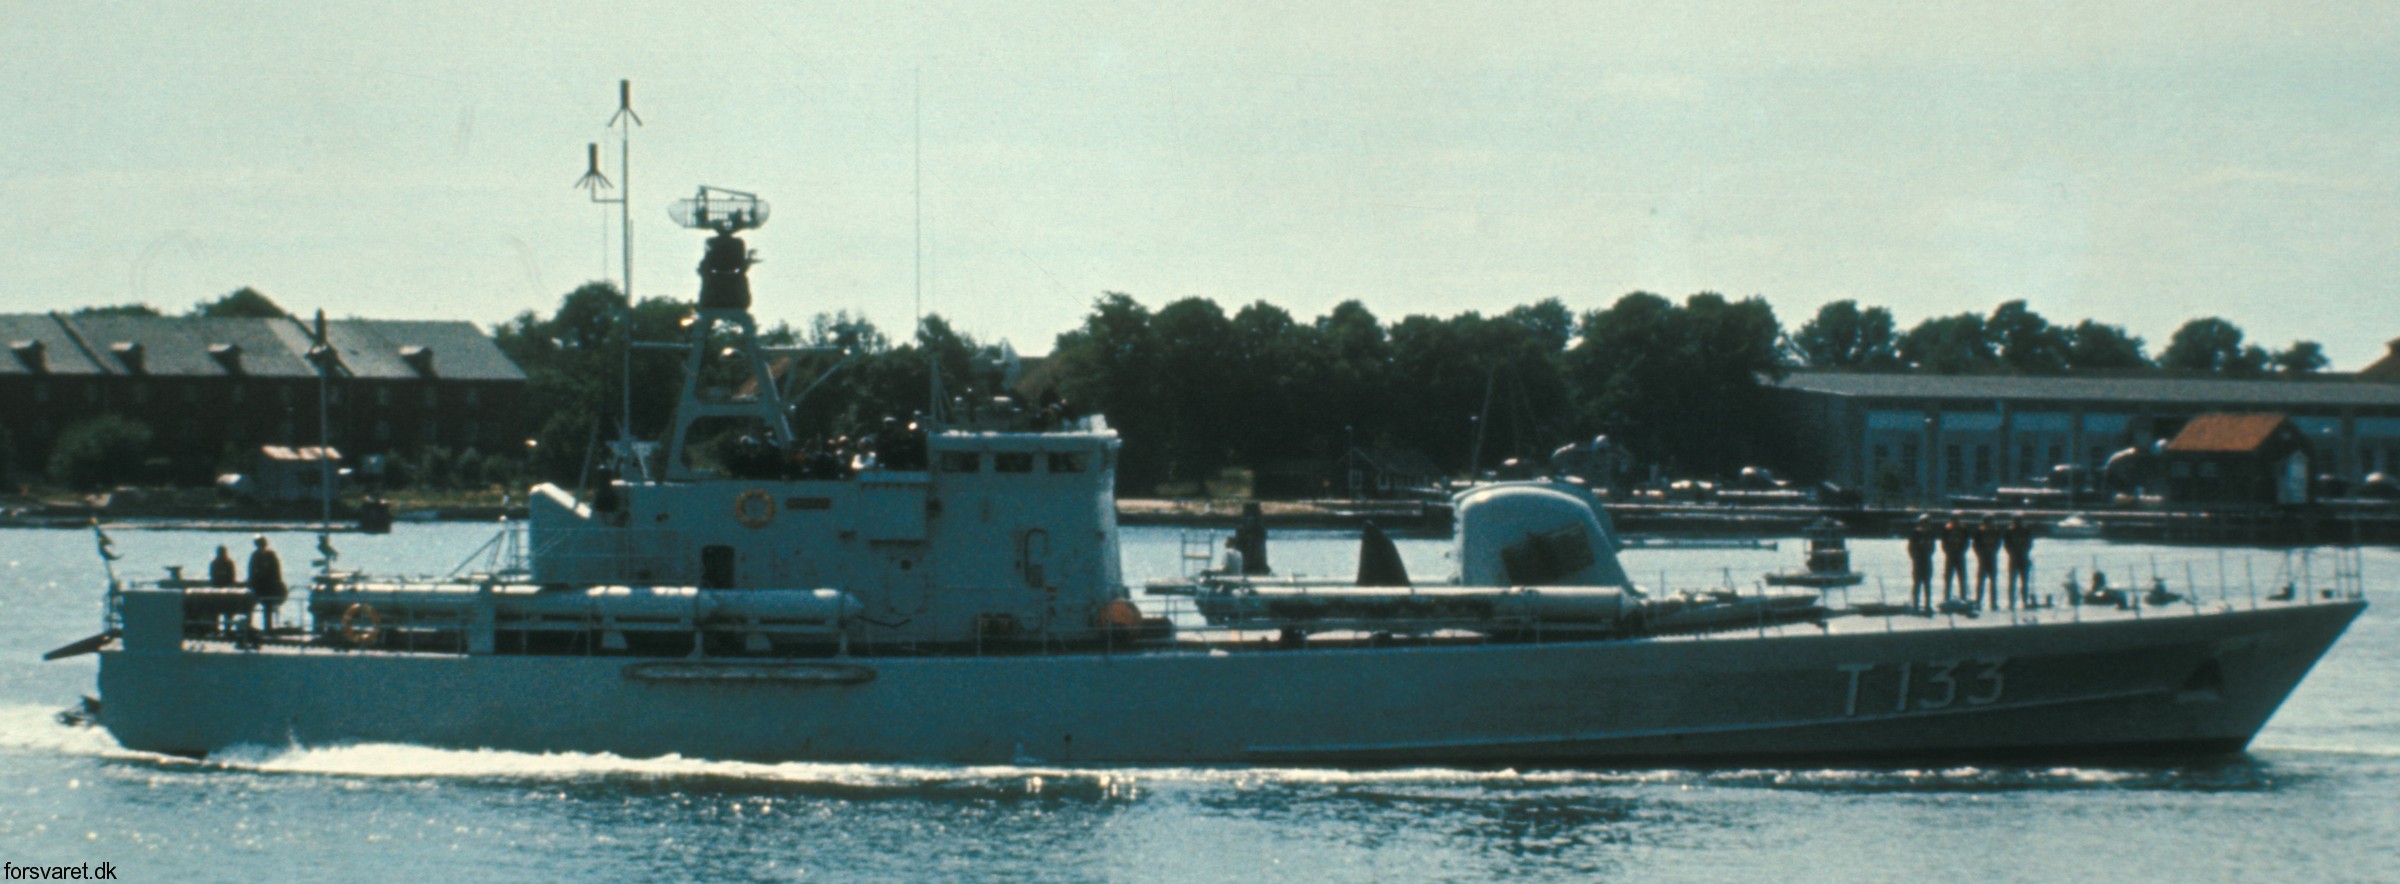 t133 norrtälje hswms hms norrköping class fast attack craft torpedo missile patrol boat swedish navy svenska marinen 15